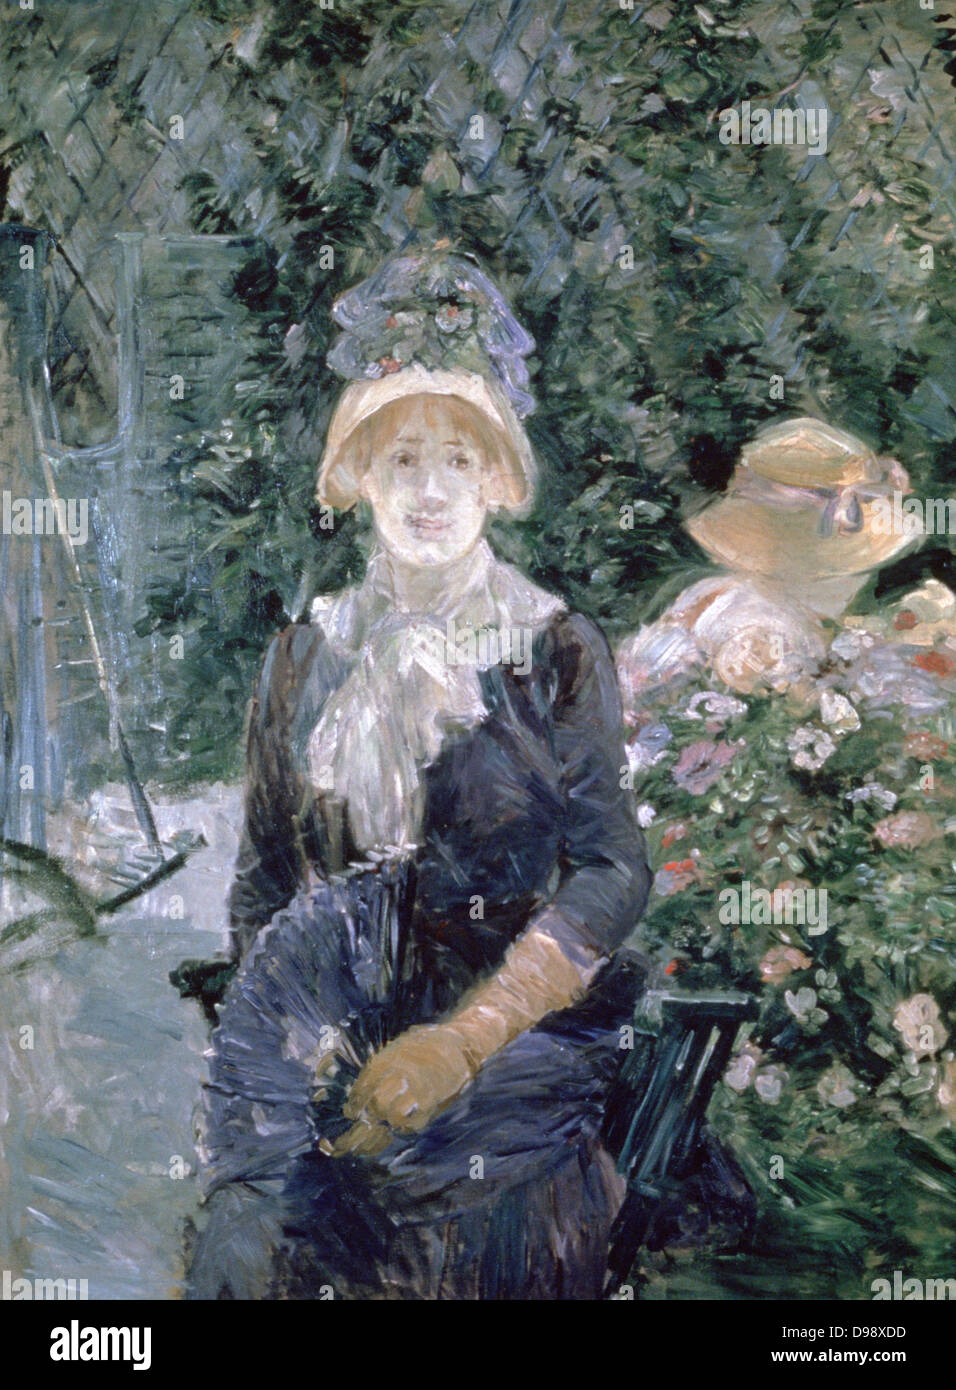 Dans le jardin" 1883. Huile sur toile. Berthe Morisot (1841-1895) peintre français, belle-sœur d'Edouard Manet. Portrait femme en robe bleue avec fichu blanc, chapeau de paille avec liseré bleu et la tenue de ventilateur, assis dans le jardin d'été. Banque D'Images